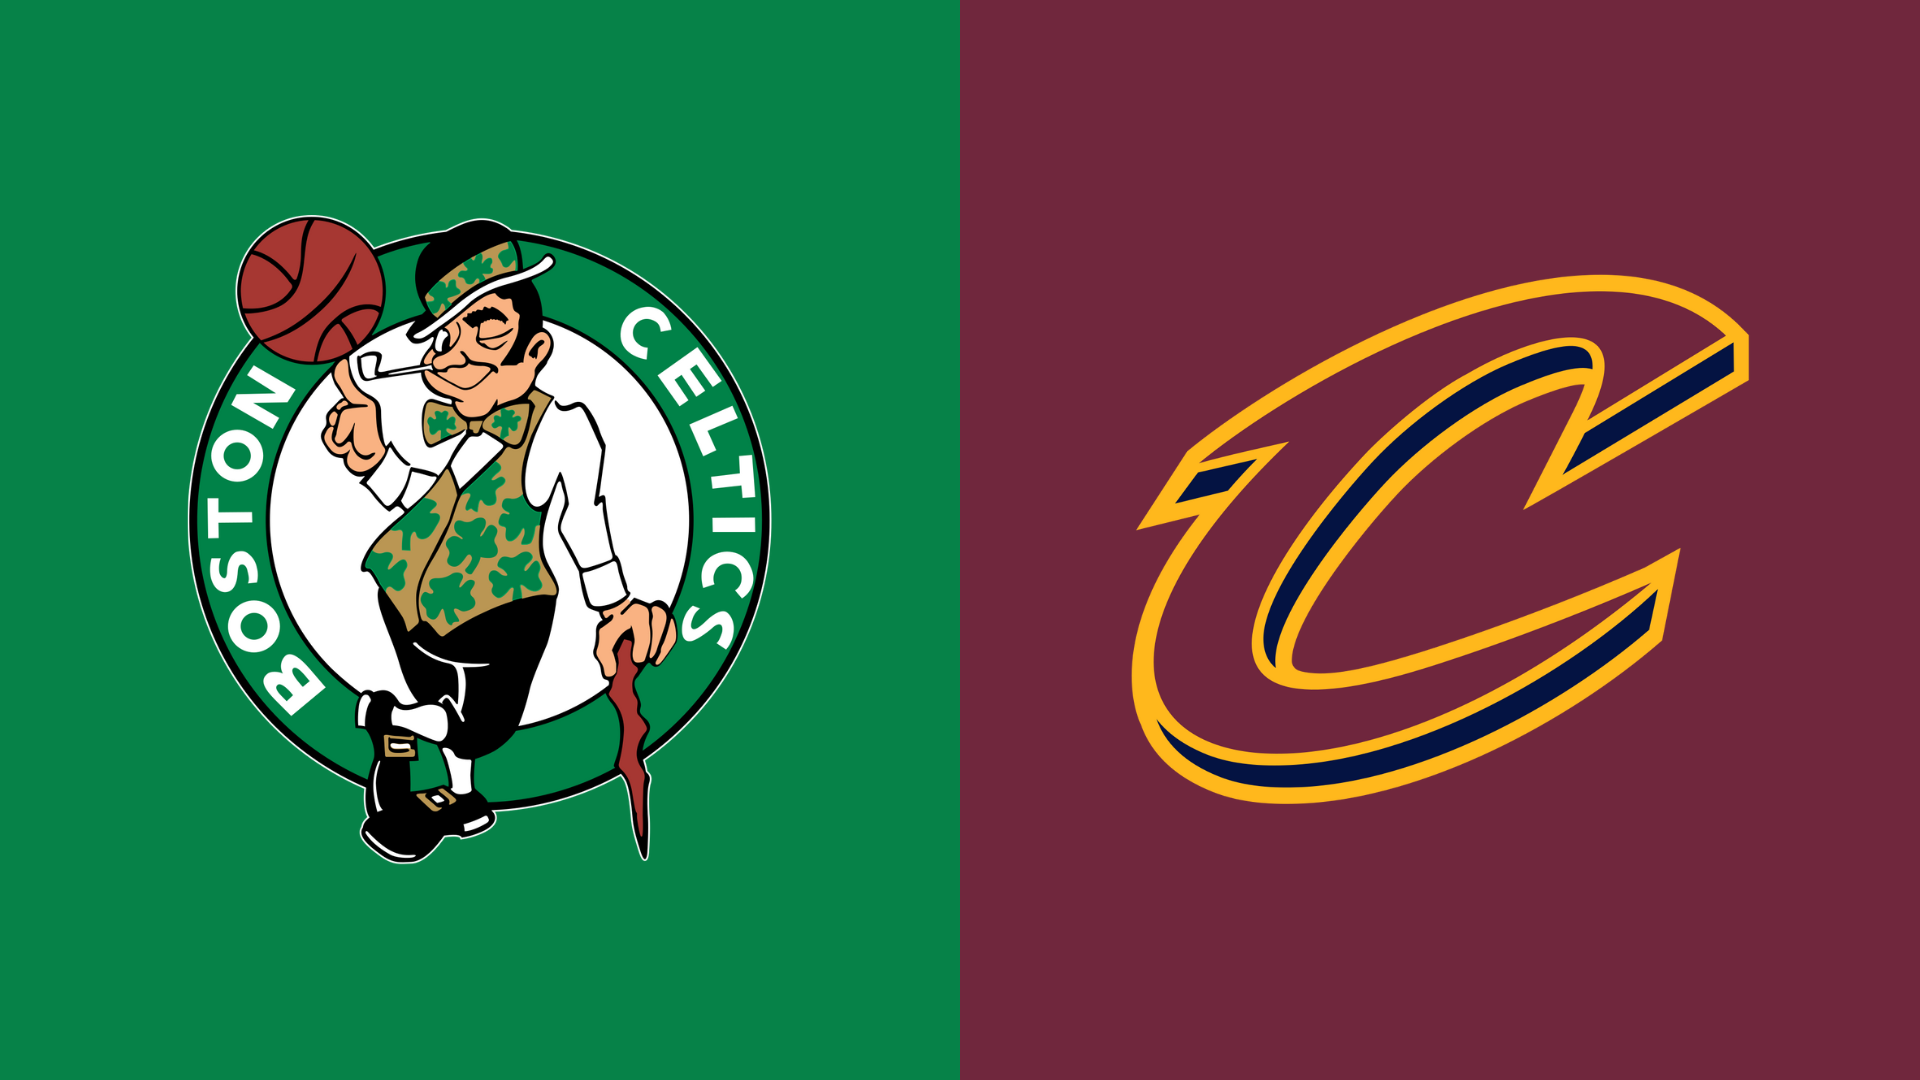 Celtics vs cavaliers